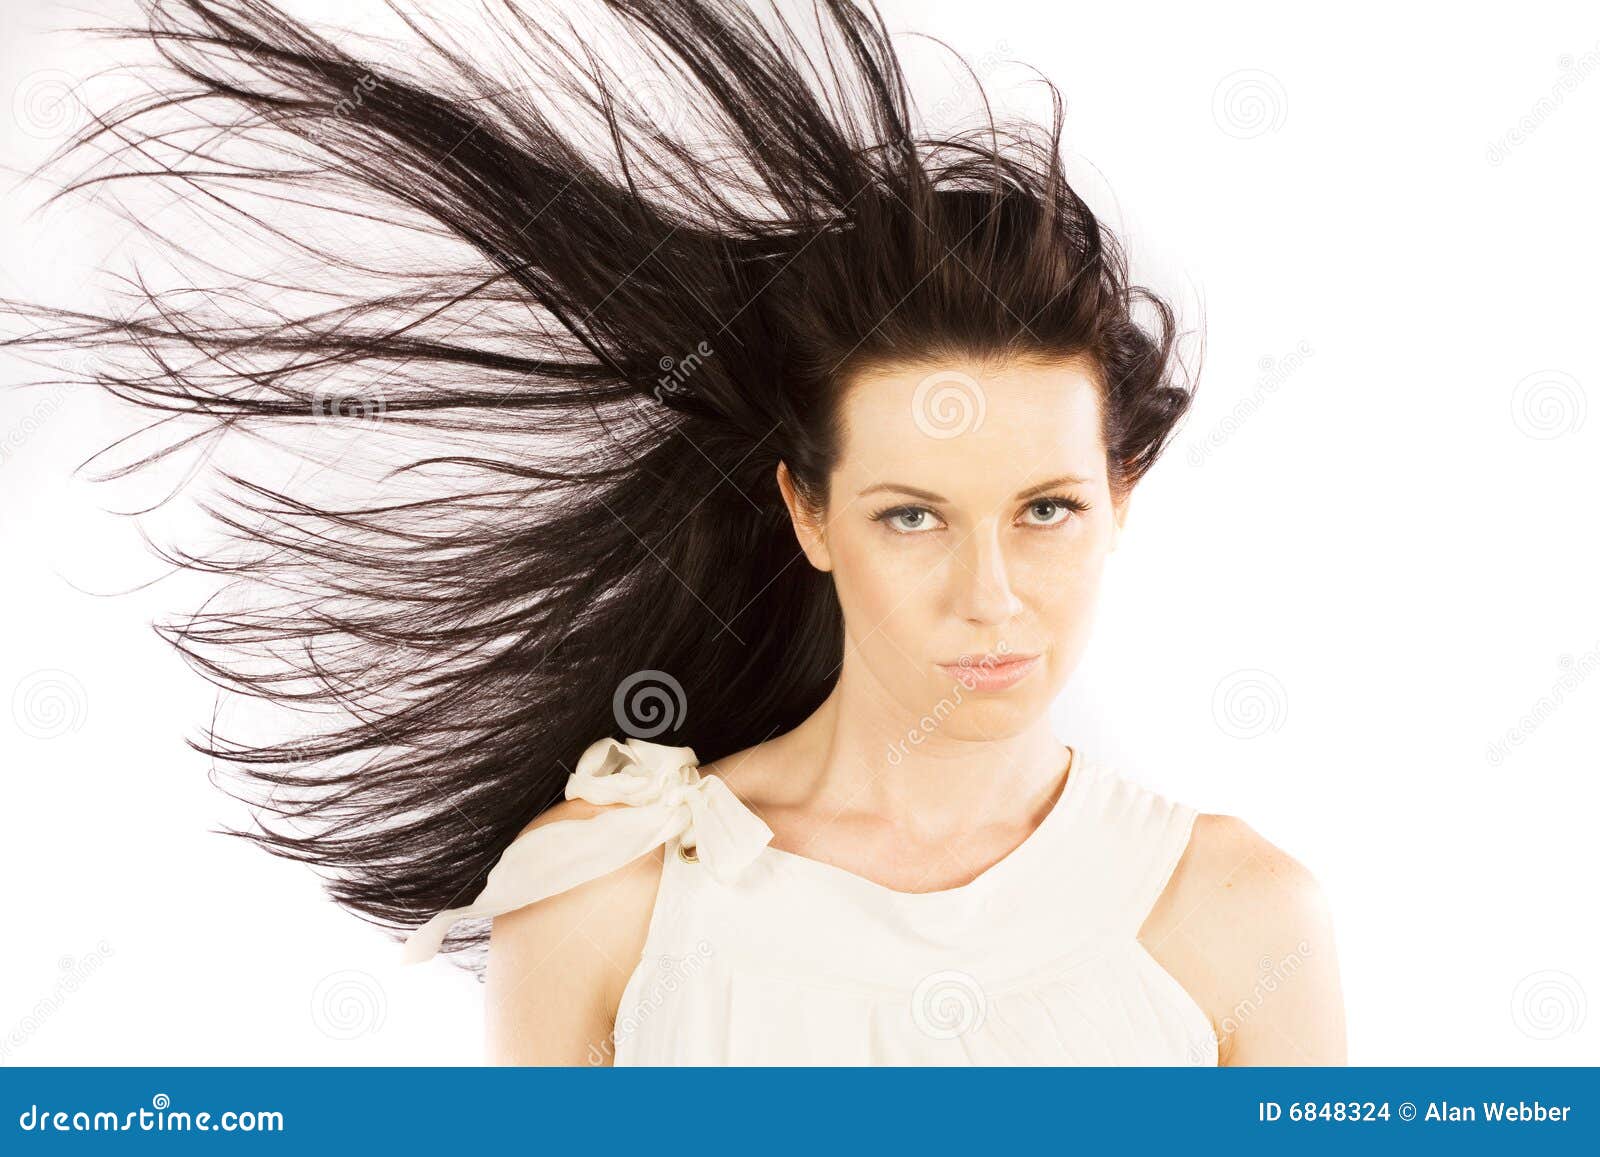 头发被风吹起来的美女人物高清摄影jpg图片免费下载_编号19lhj7281_图精灵